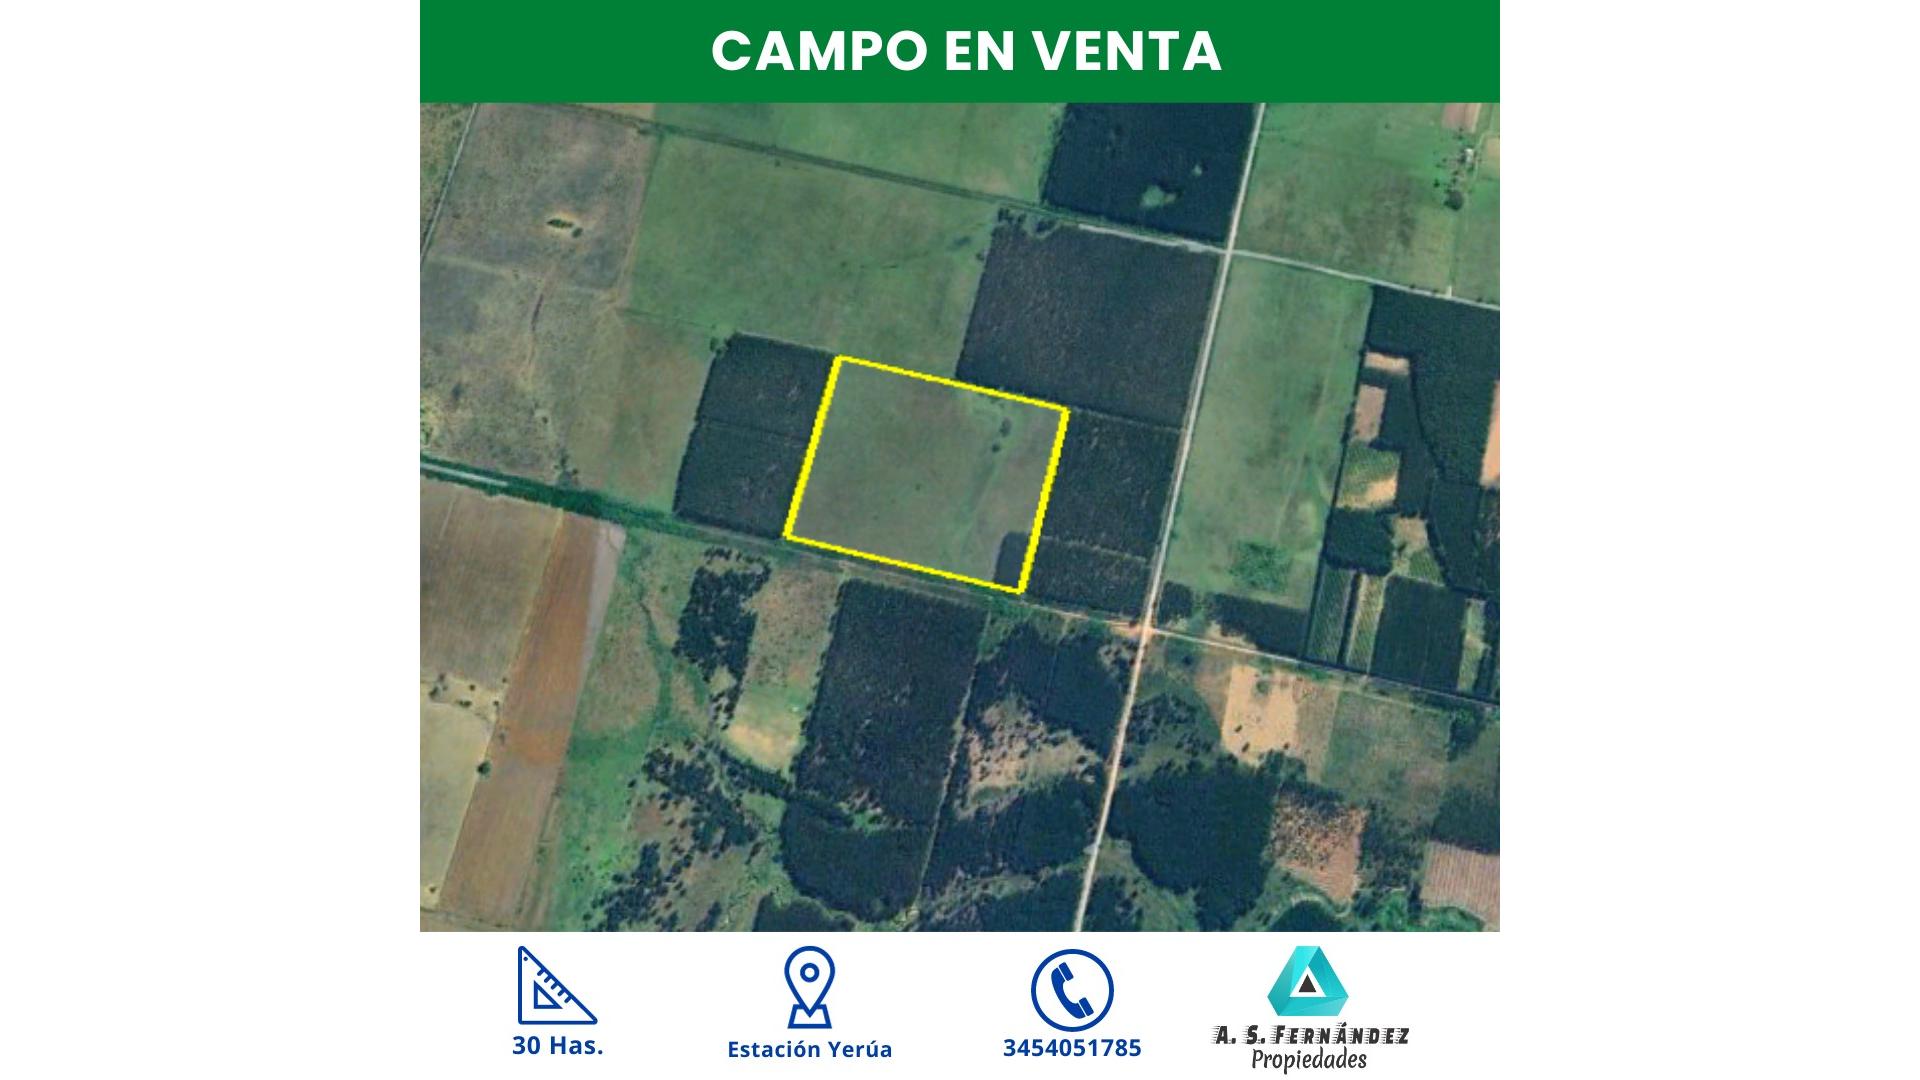 #4797822 | Sale | Farm | Concordia (A.S. Fernández Propiedades)